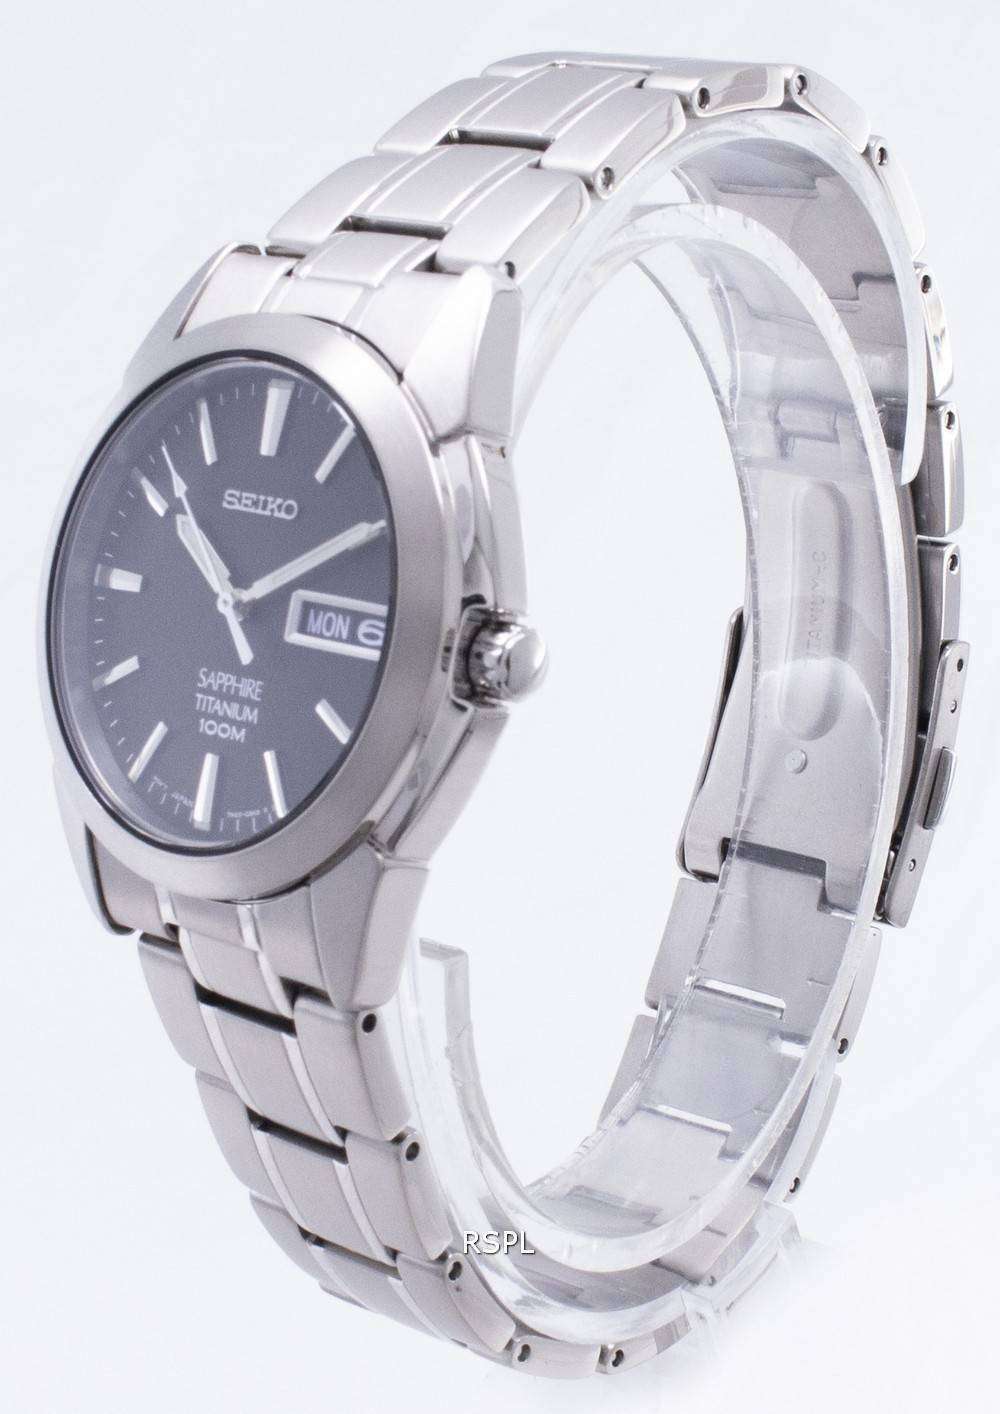 Seiko Titanium Sapphire SGG731 SGG731P1 SGG731P Men's Watch 